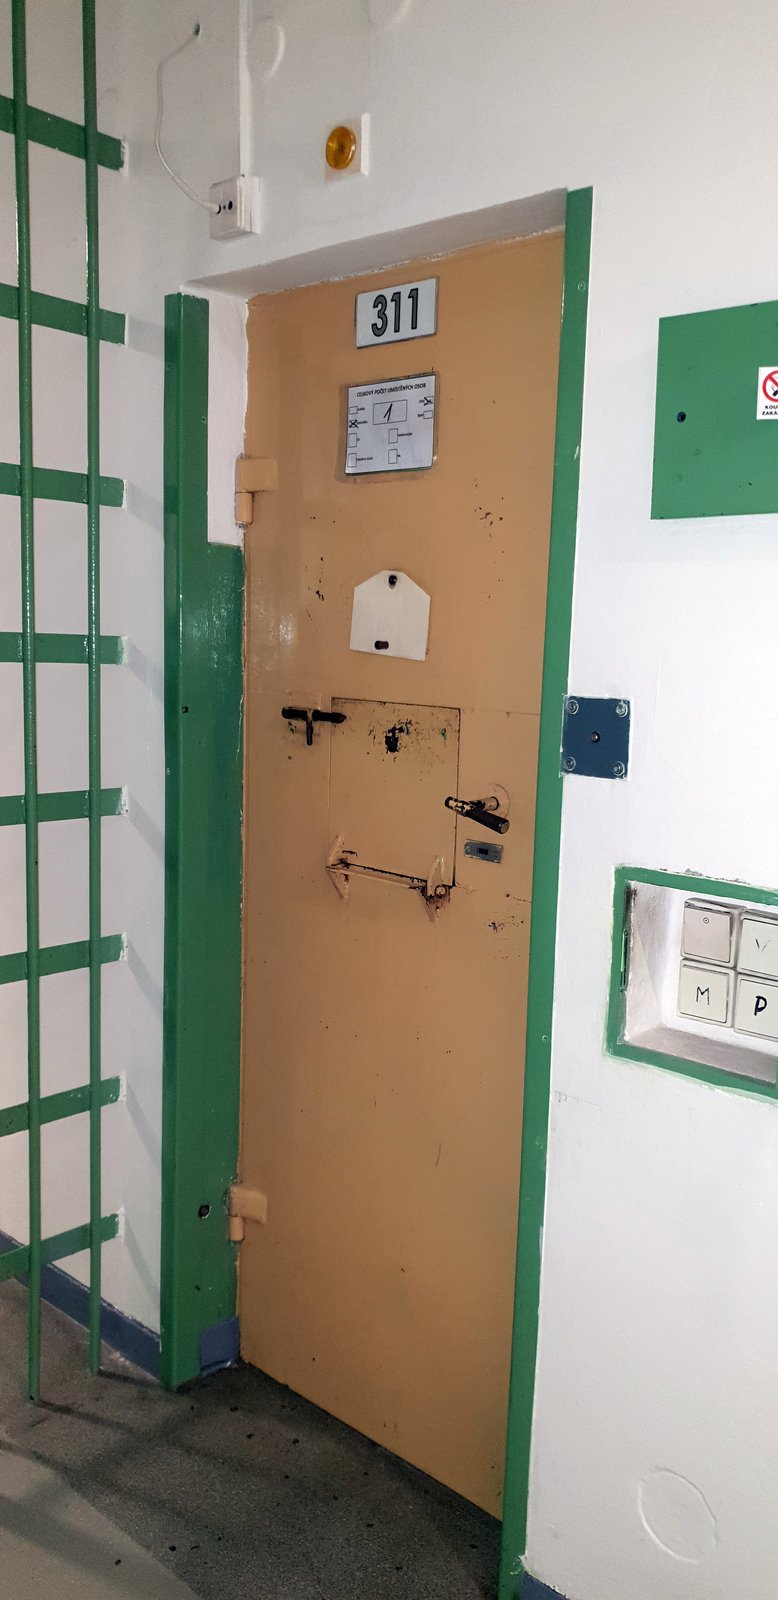 Takhle si ve vězení žije David Rath: Vězeňská služba zveřejnila fotky z Teplic